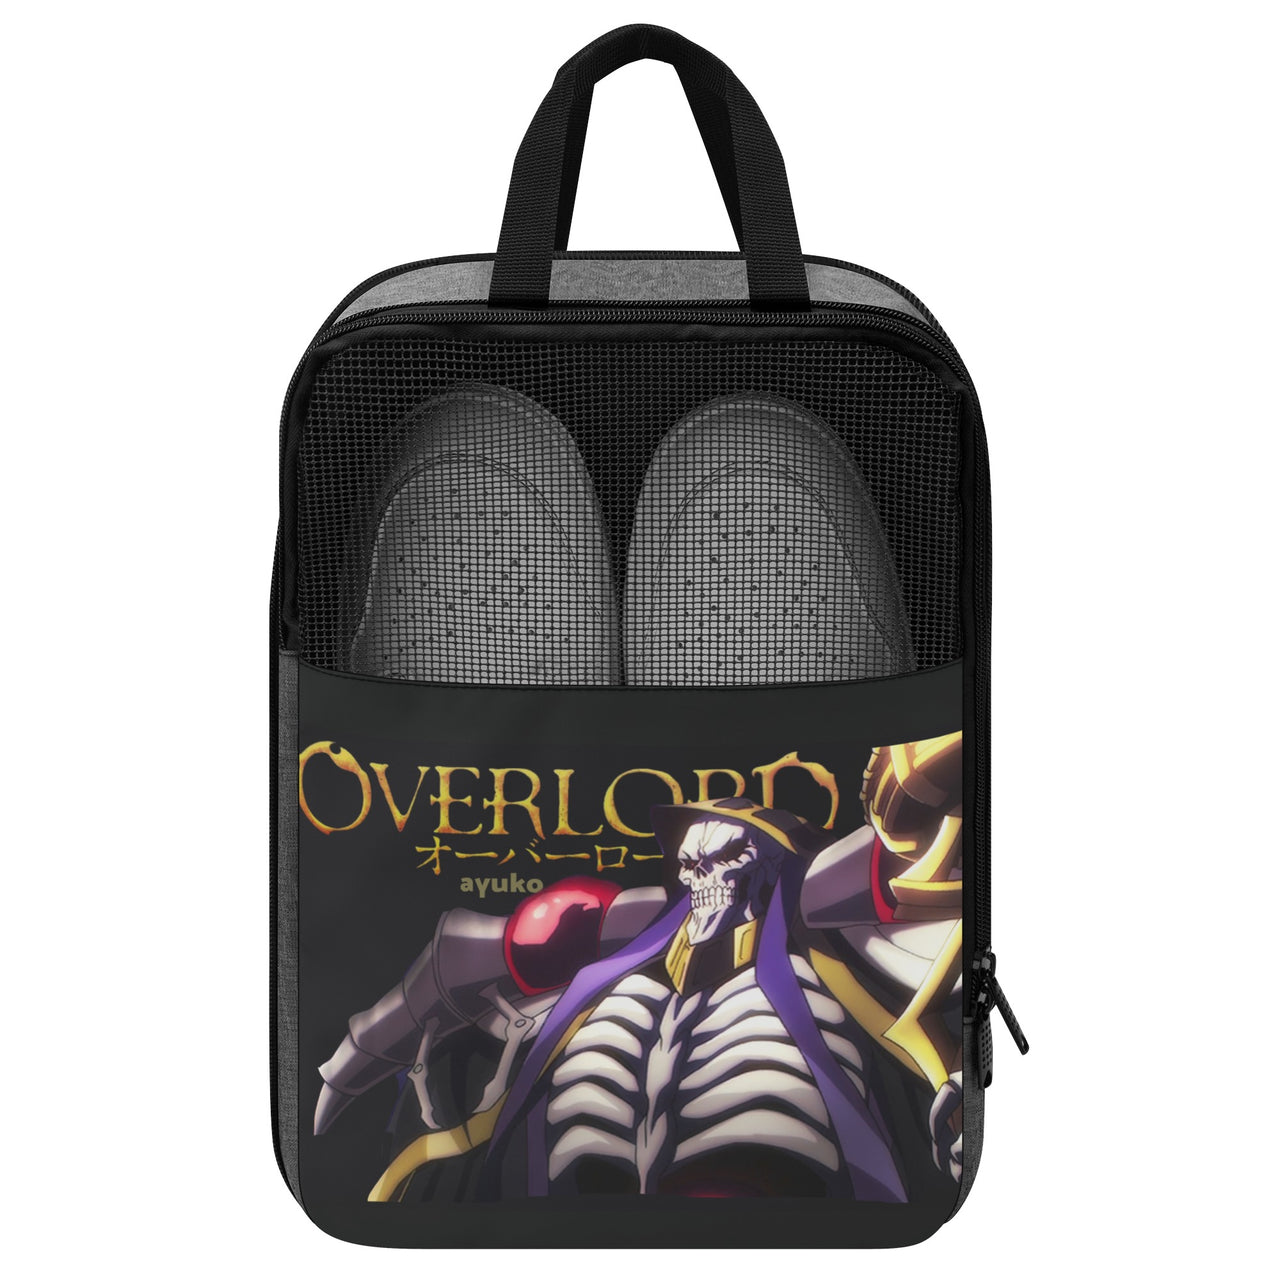 Overlord Anime Shoe Bag